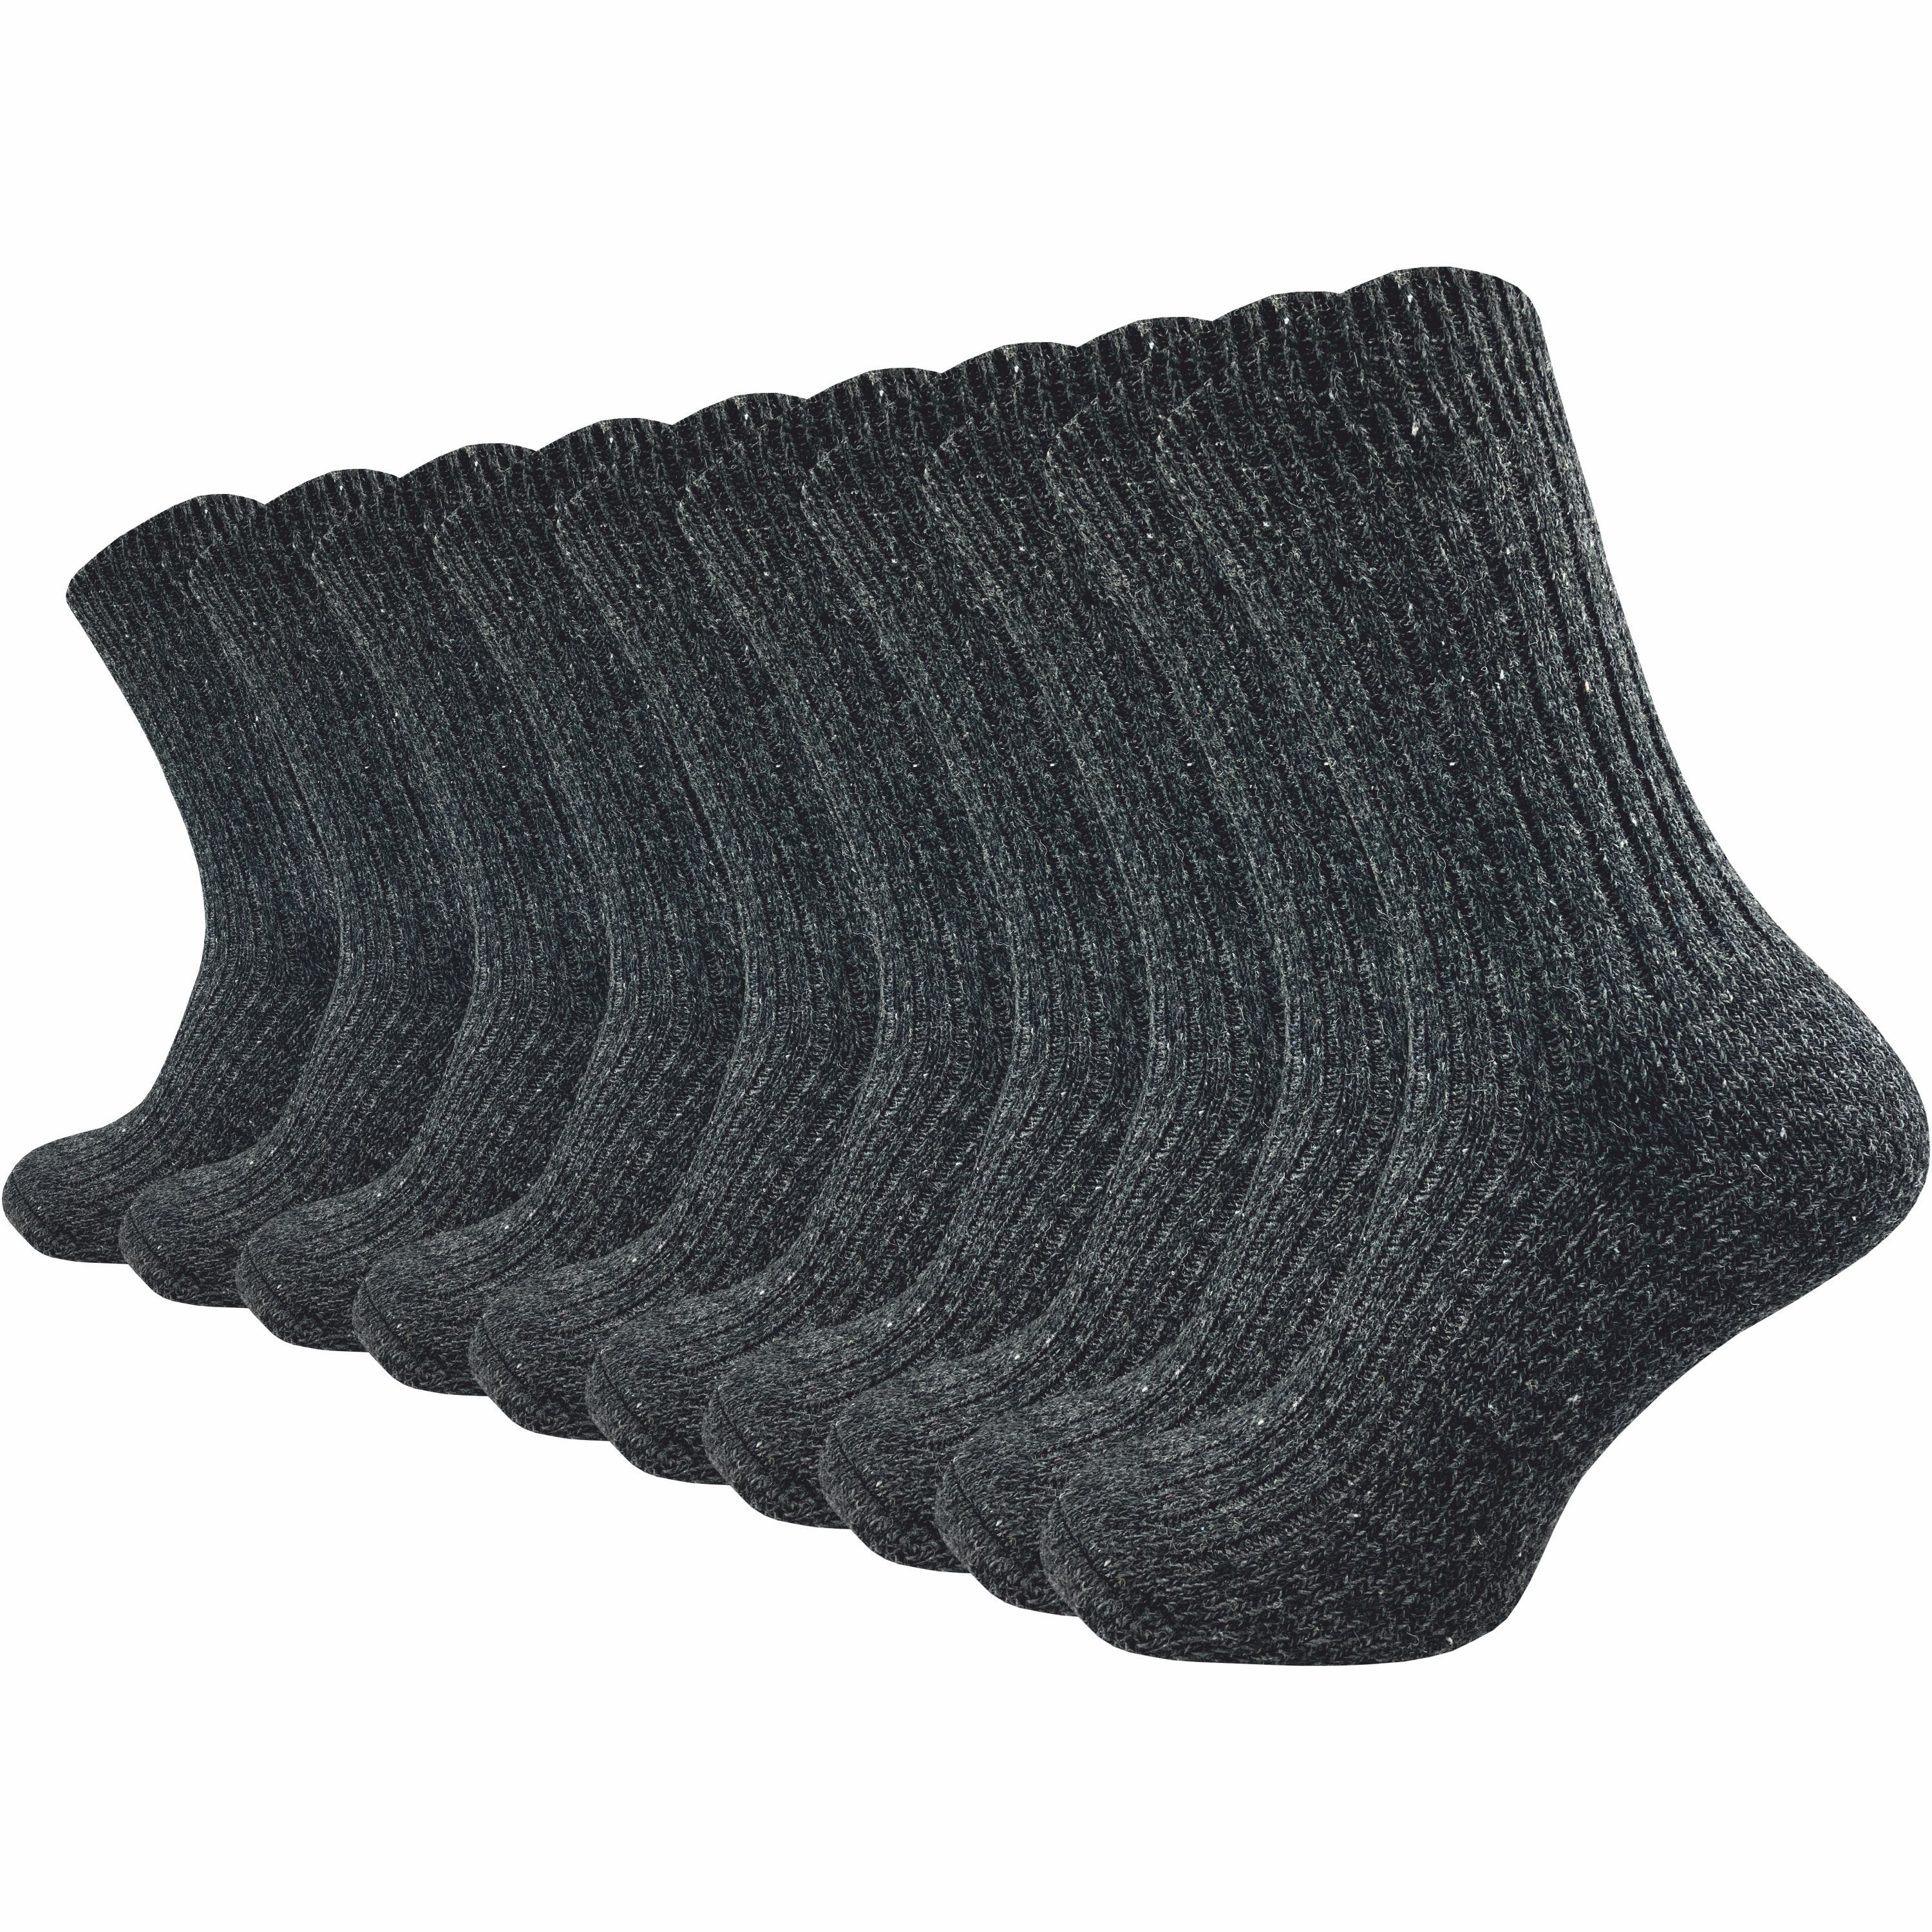 GAWILO Norwegersocken für warme Füße aus 70% Wolle - Thermosocke für Herren (10 Paar) Dickes Fersenpolster und Plüschsohle - Wintersocken gegen kalte Füße schwarz